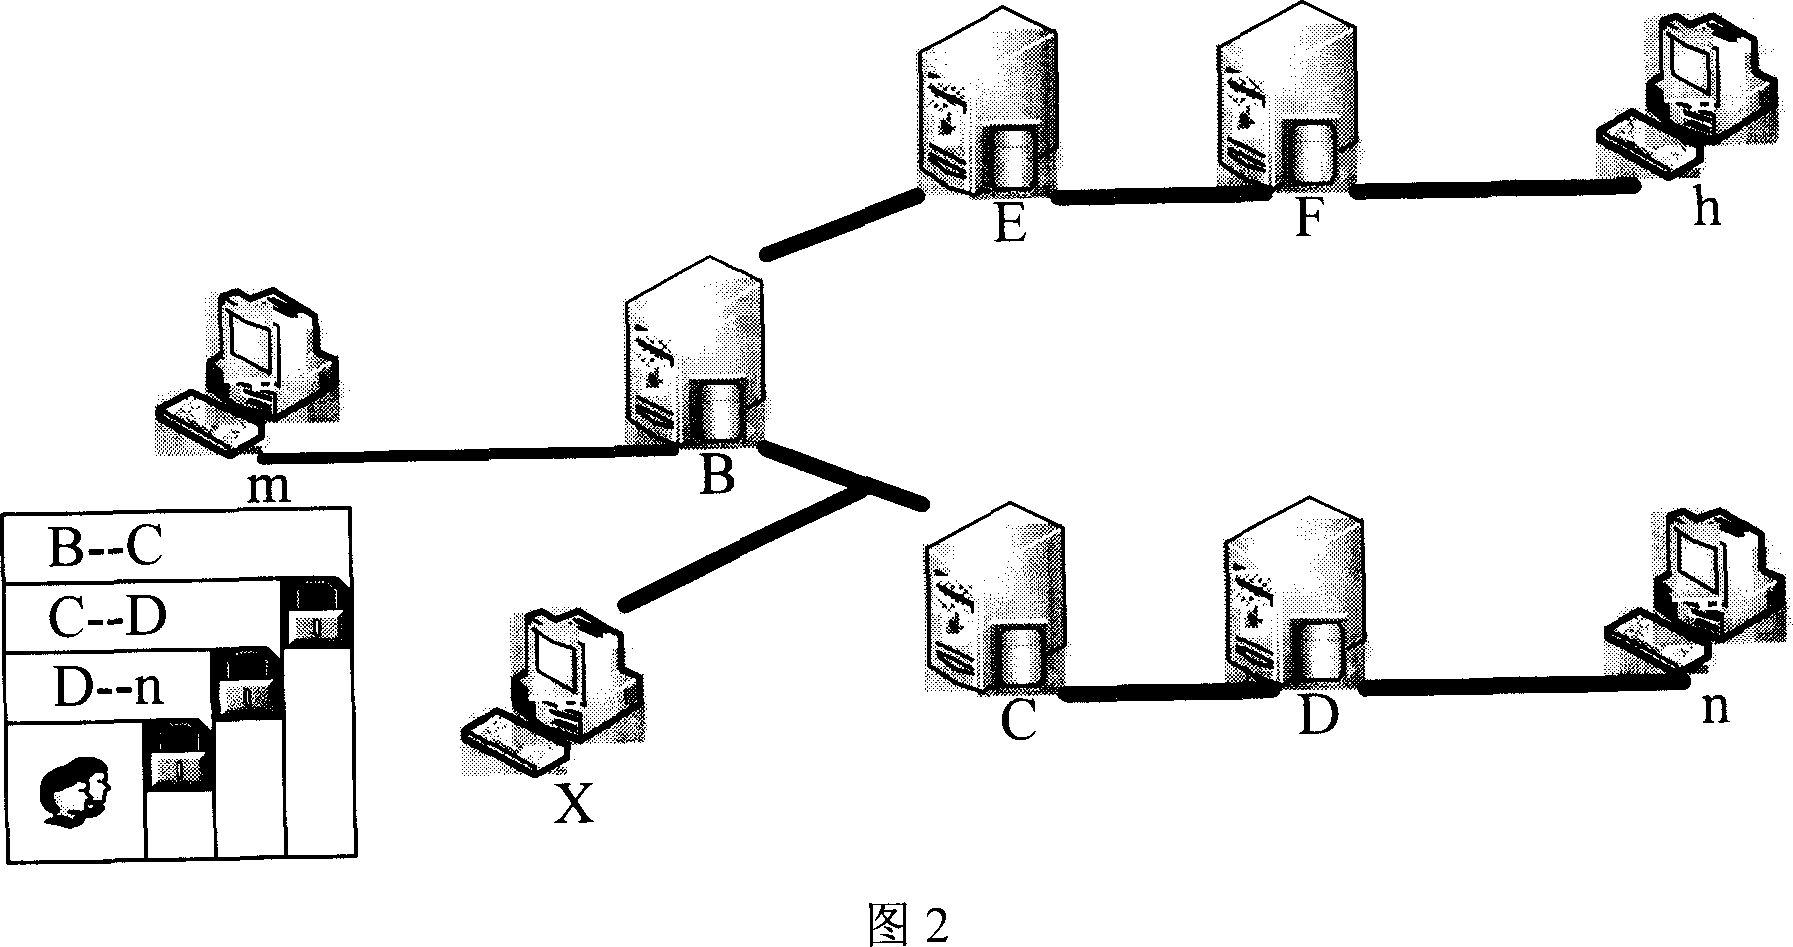 Method for detecting network nonlicet nodes by adjacent supervise